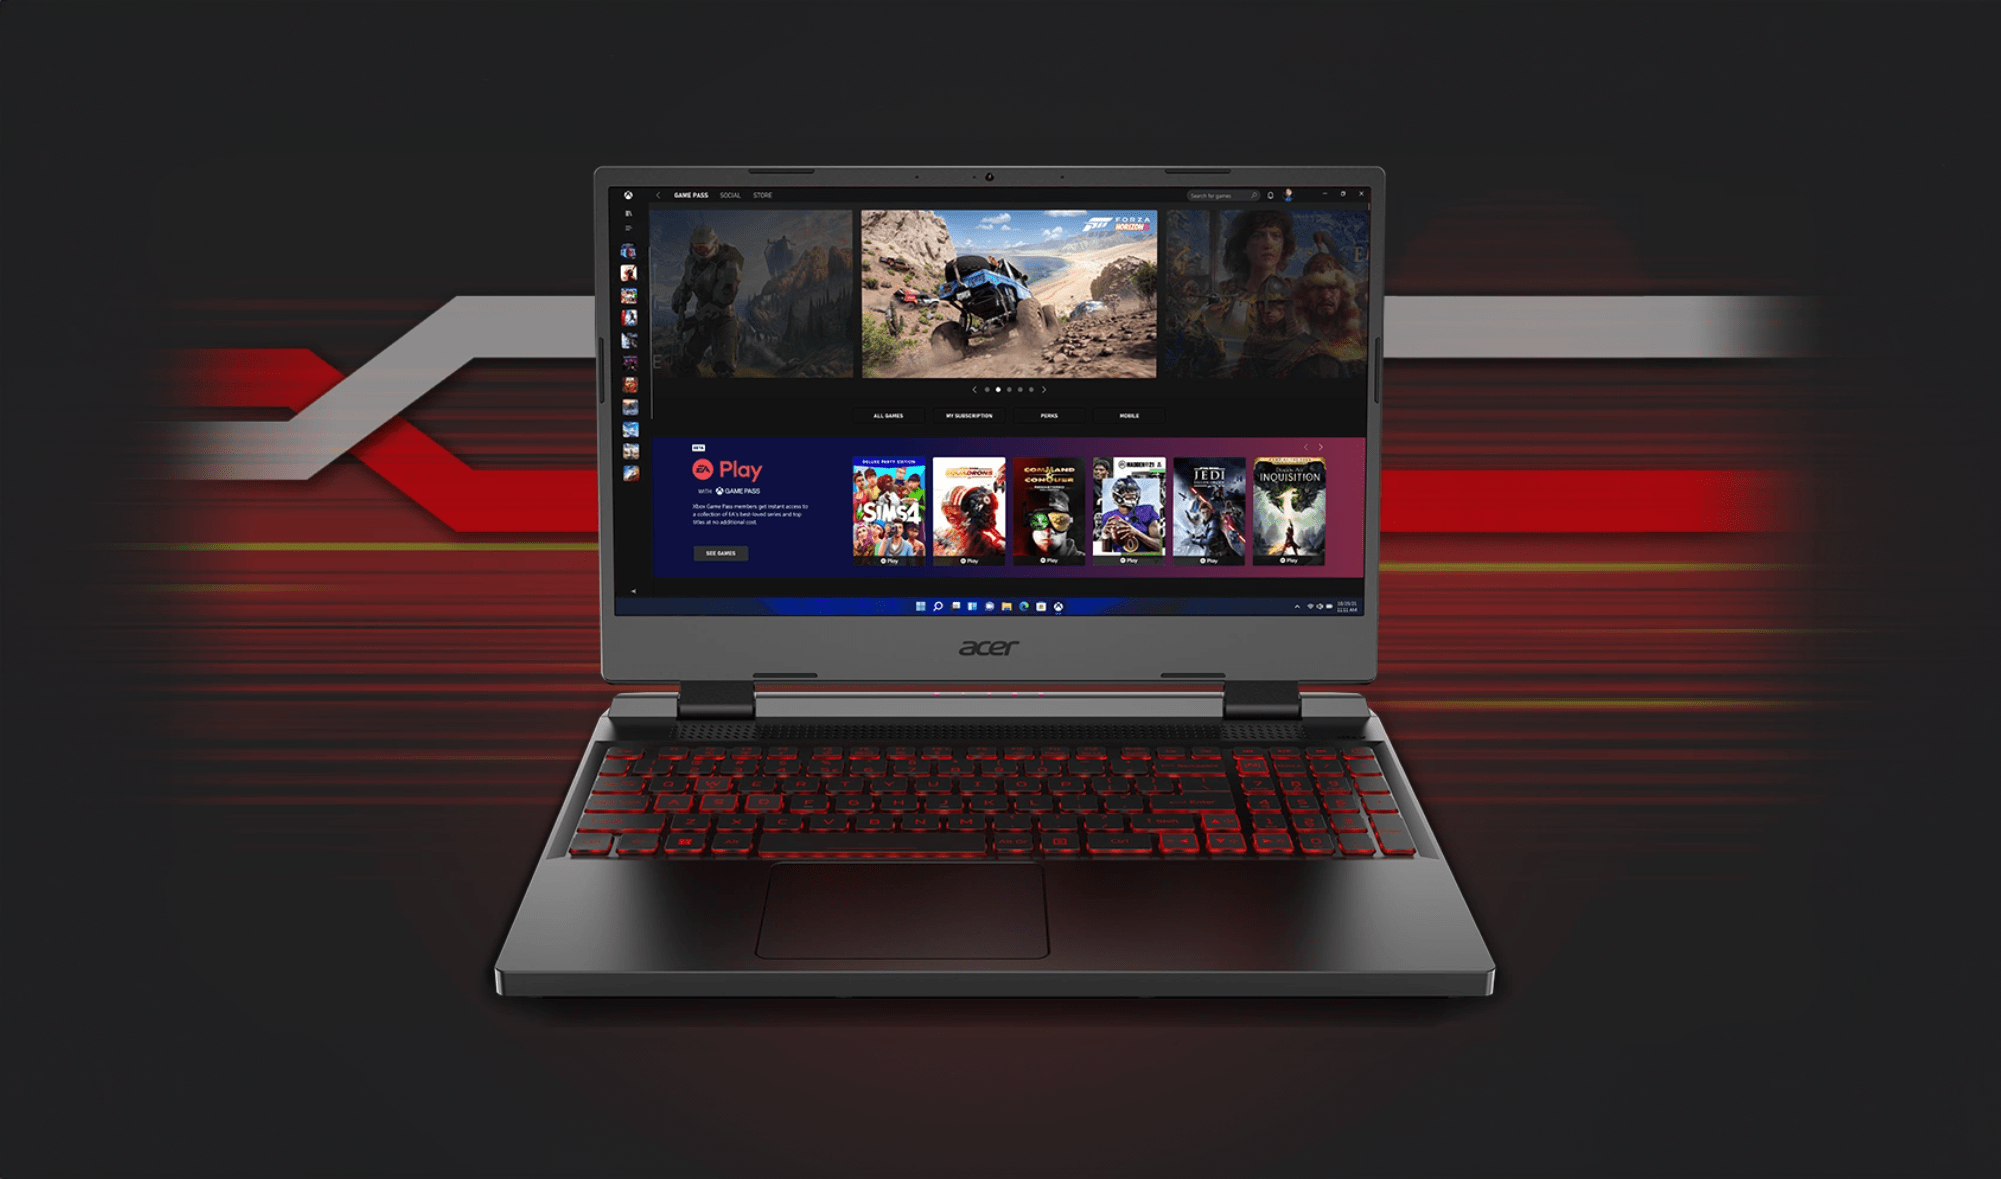 Laptop gamingowy Acer z czerwonym podświetleniem klawiatury wyświetlający interfejs platformy do dystrybucji gier cyfrowych z miniaturkami gier na ekranie, umieszczony na tle w odcieniach czerwieni i czerni.